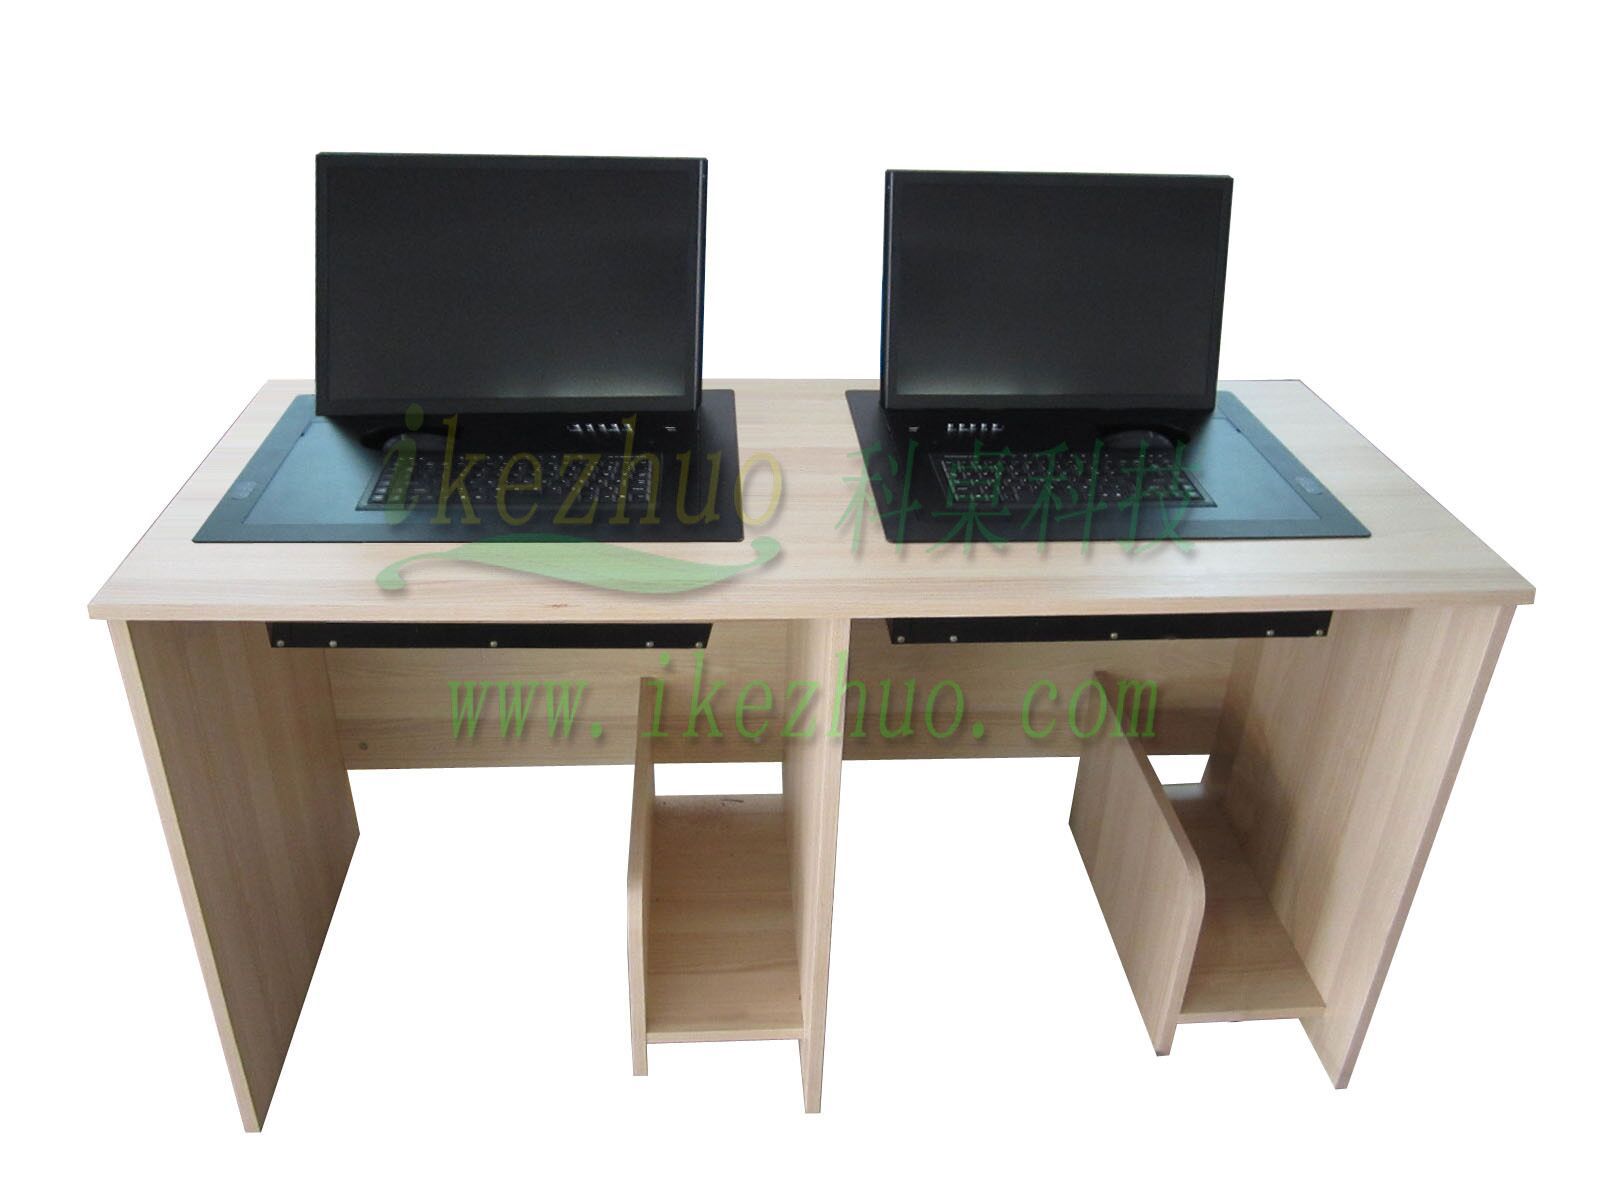 会议桌面显示屏电动翻转器 自动隐藏电脑翻转桌 液晶翻转器电脑桌